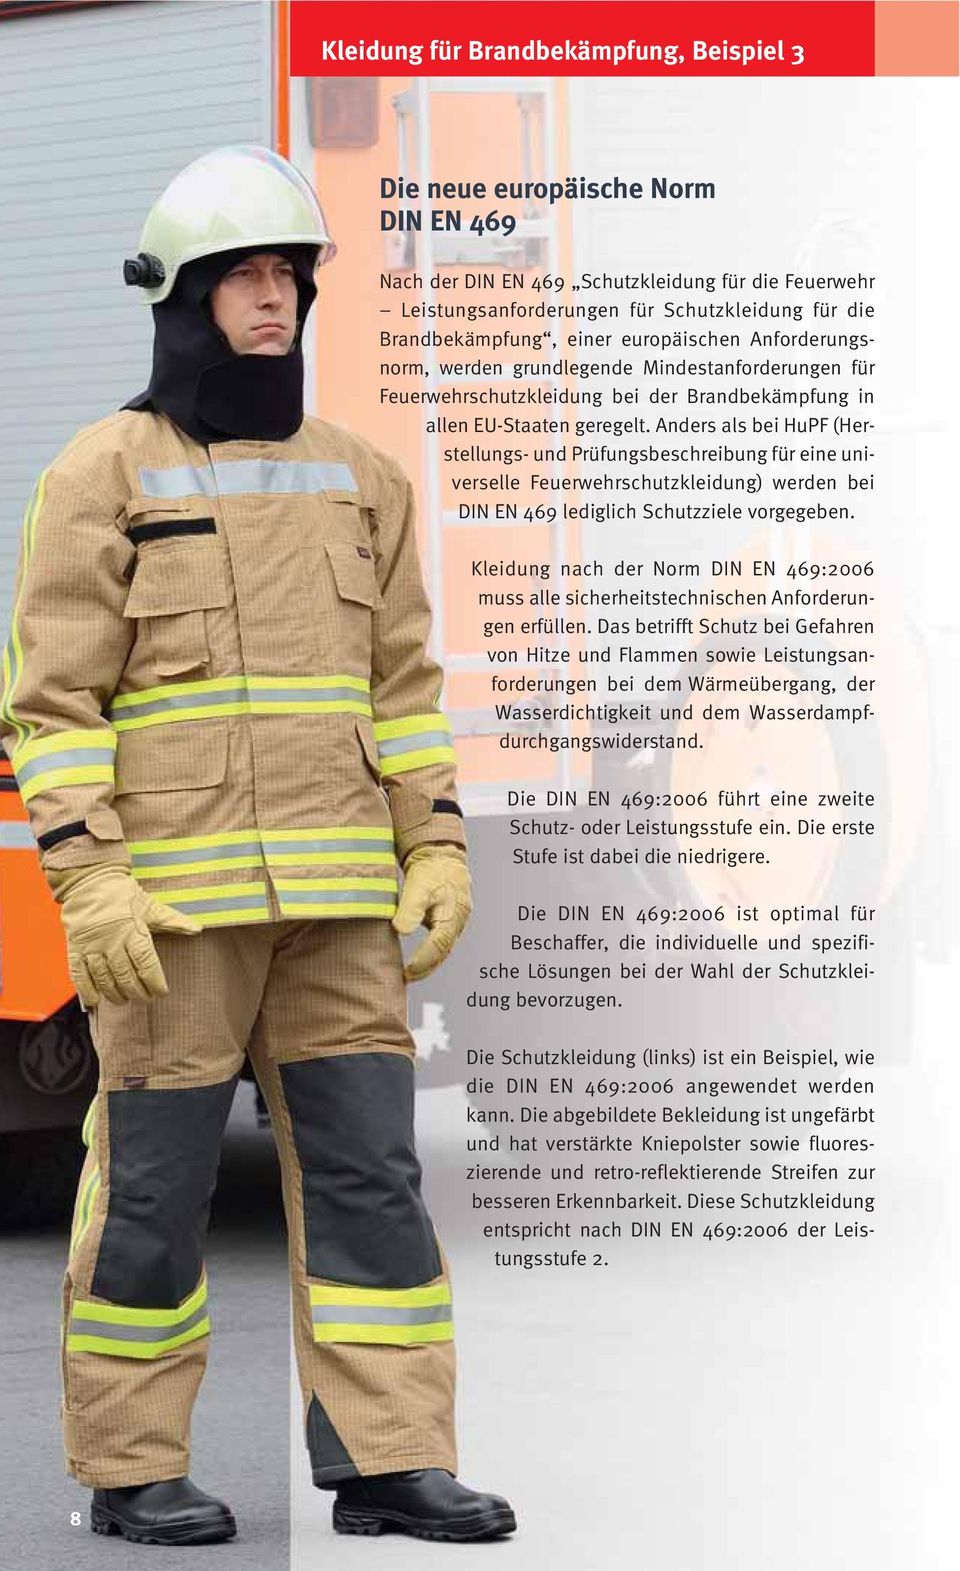 Anders als bei HuPF (Herstellungs- und Prüfungsbeschreibung für eine universelle Feuerwehrschutzkleidung) werden bei DIN EN 469 lediglich Schutzziele vorgegeben.